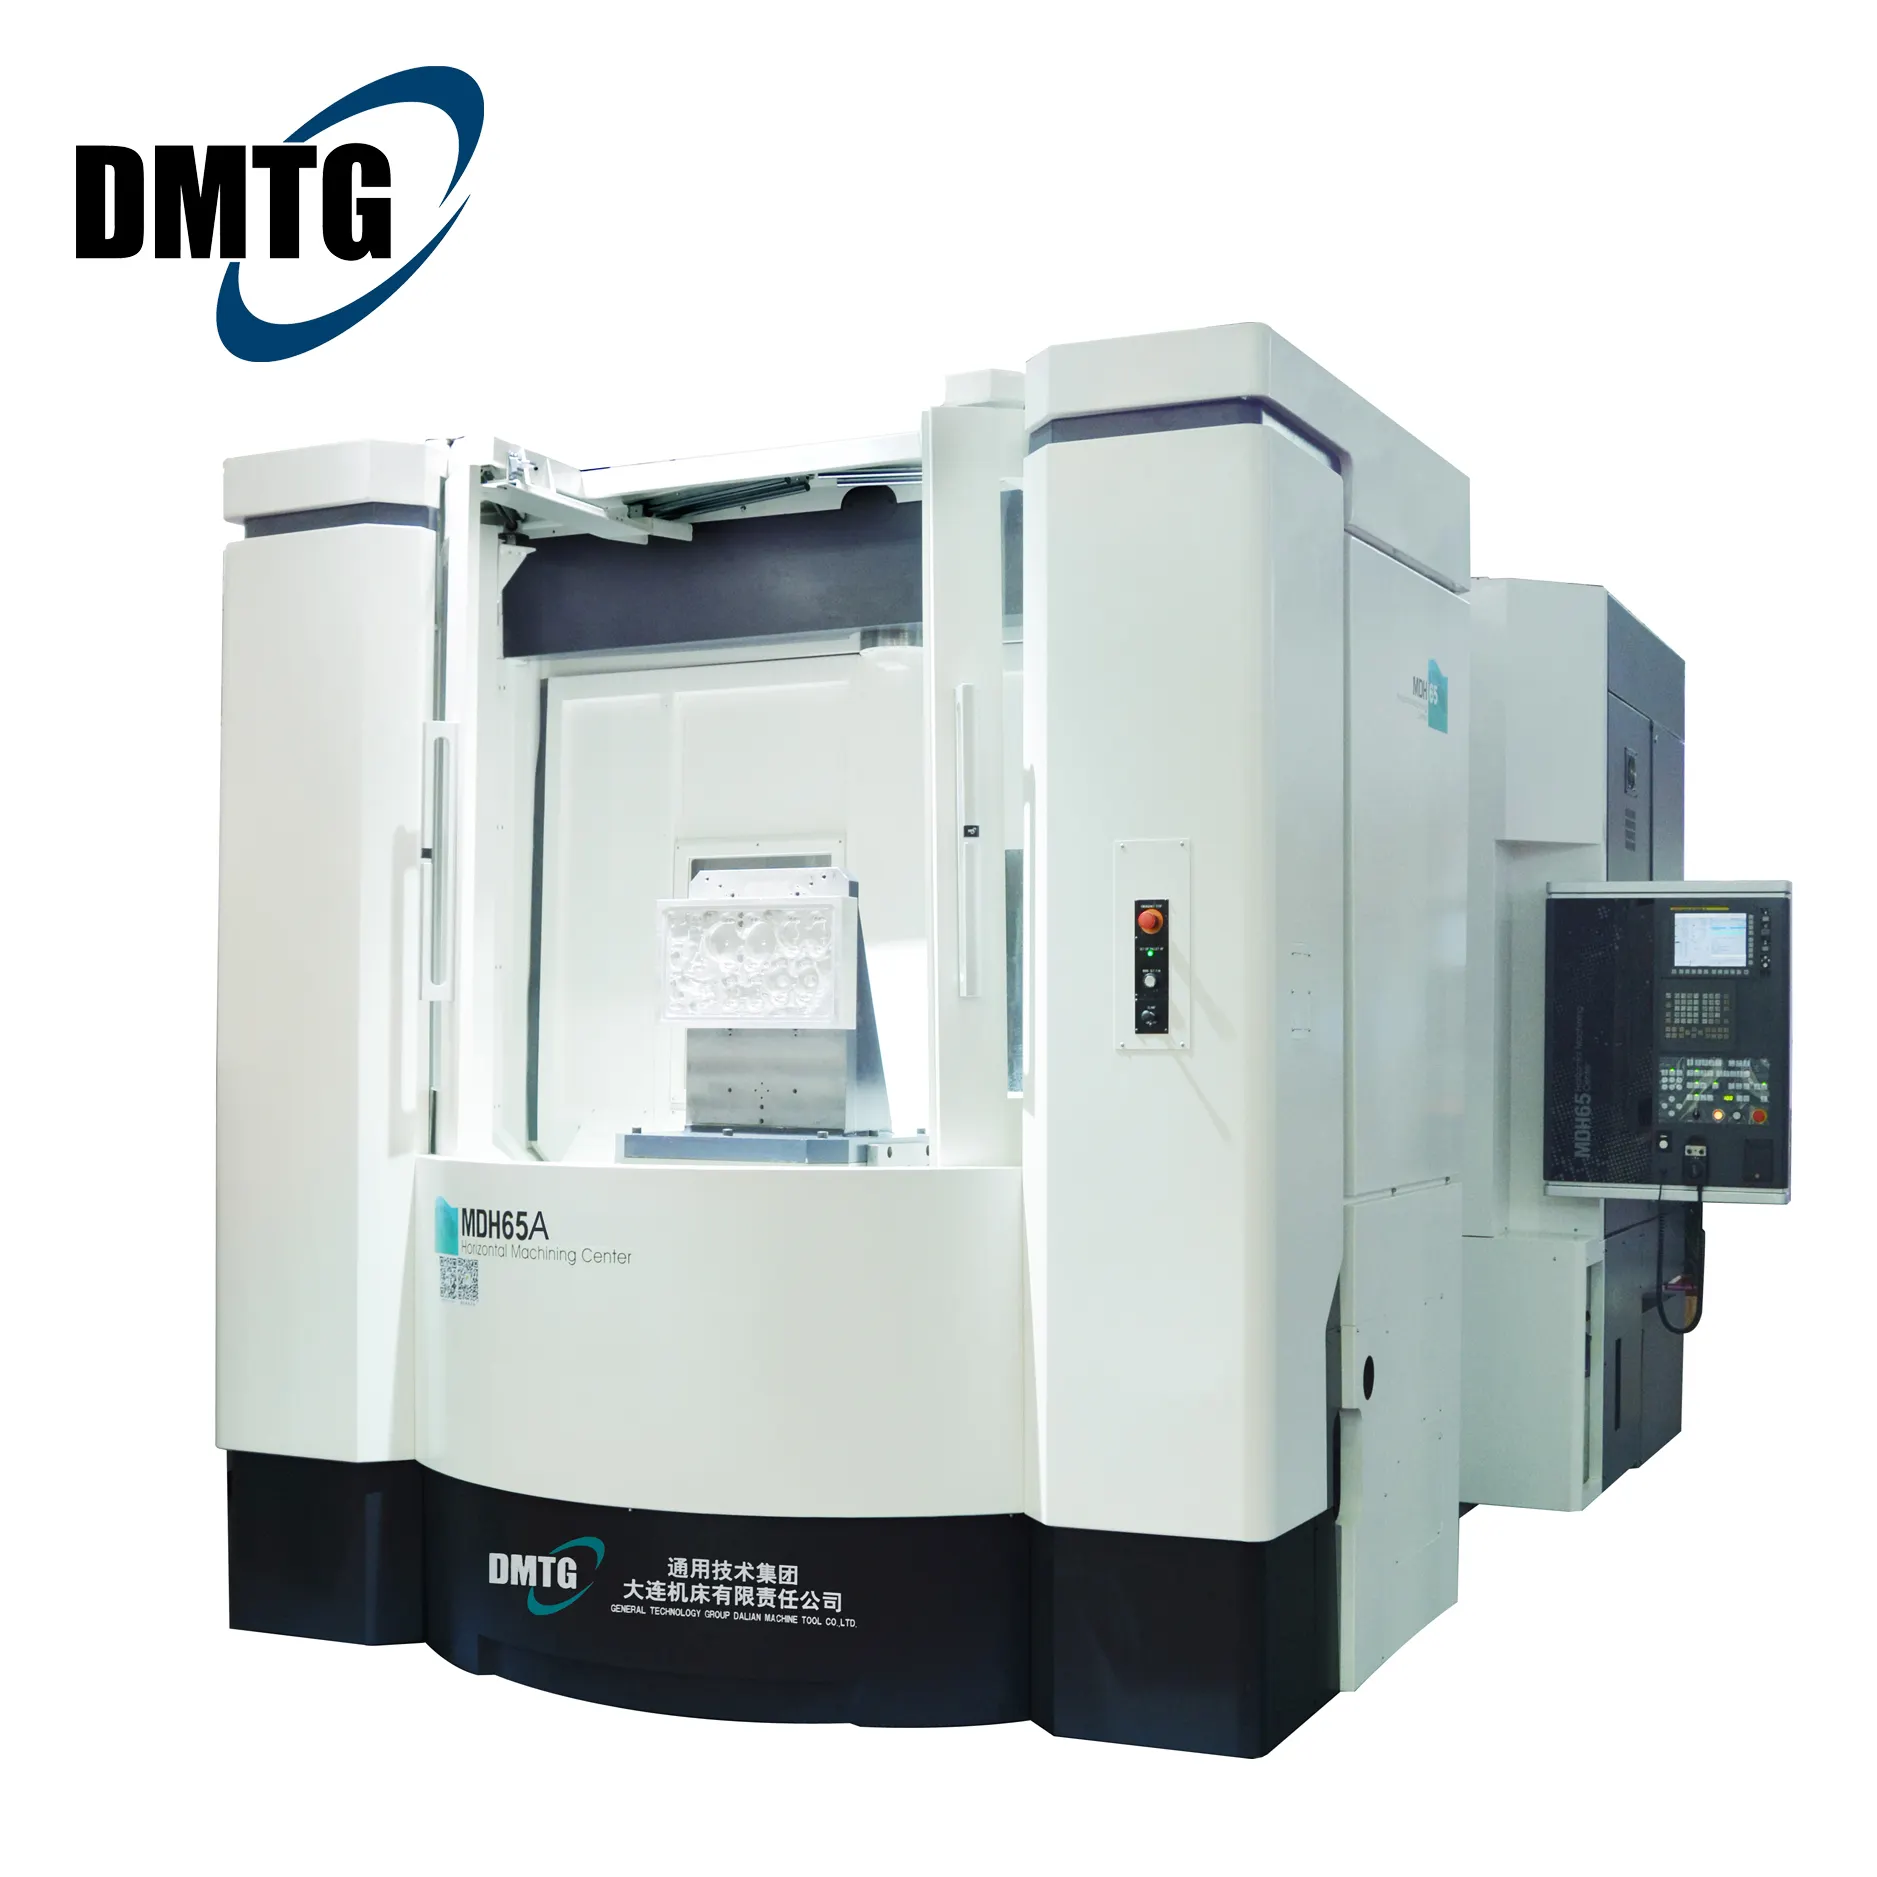 DMTG-centro de mecanizado Horizontal de alta resistencia, máquina de fresado HMC, CNC, MDH65A